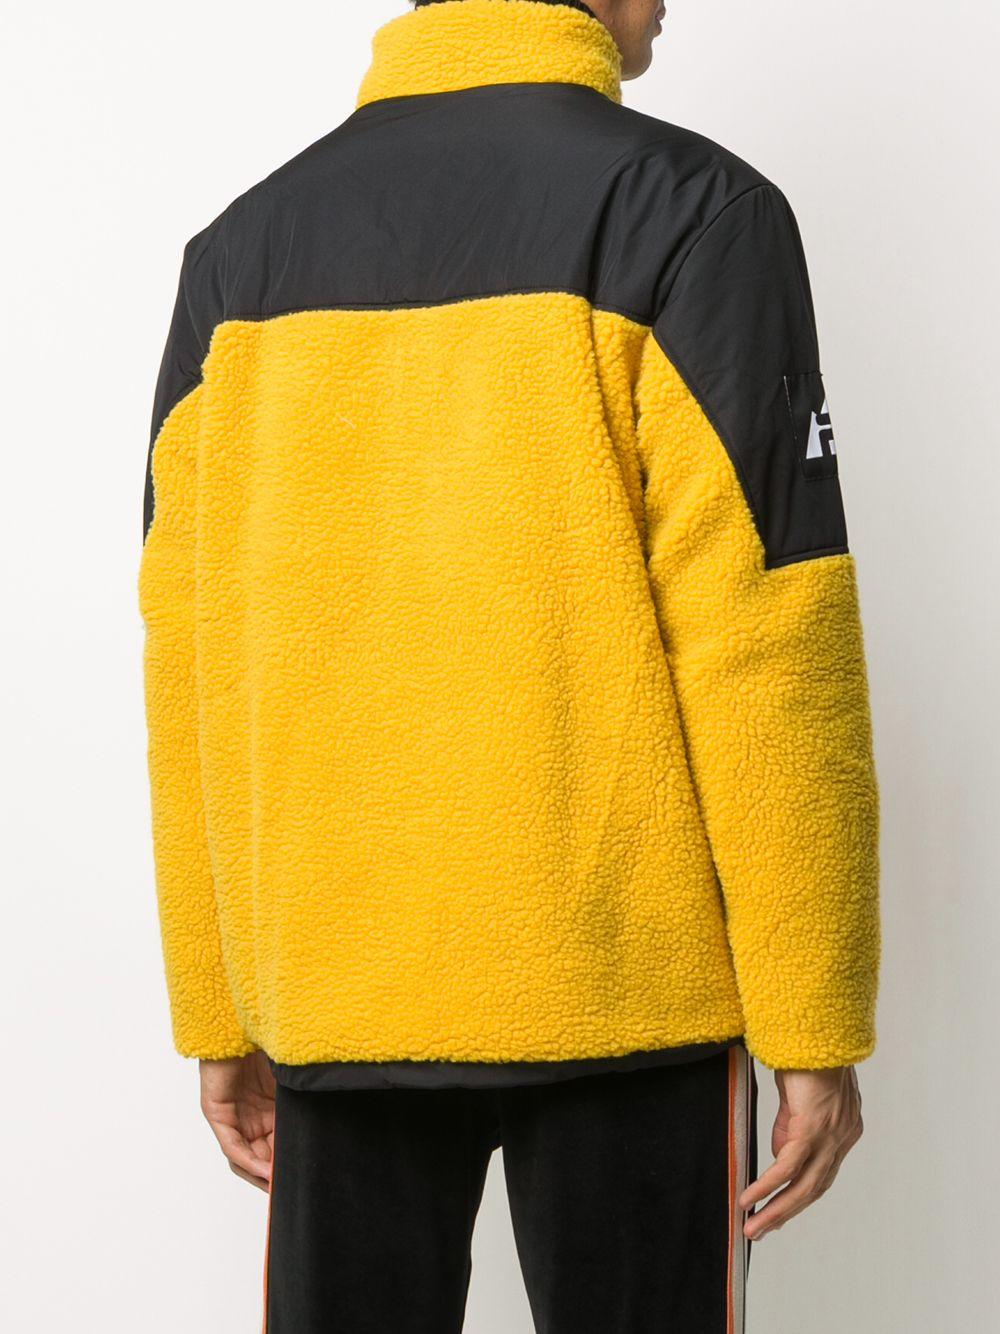 Fila Two-tone Fleece Jacket in Yellow for Men - Lyst